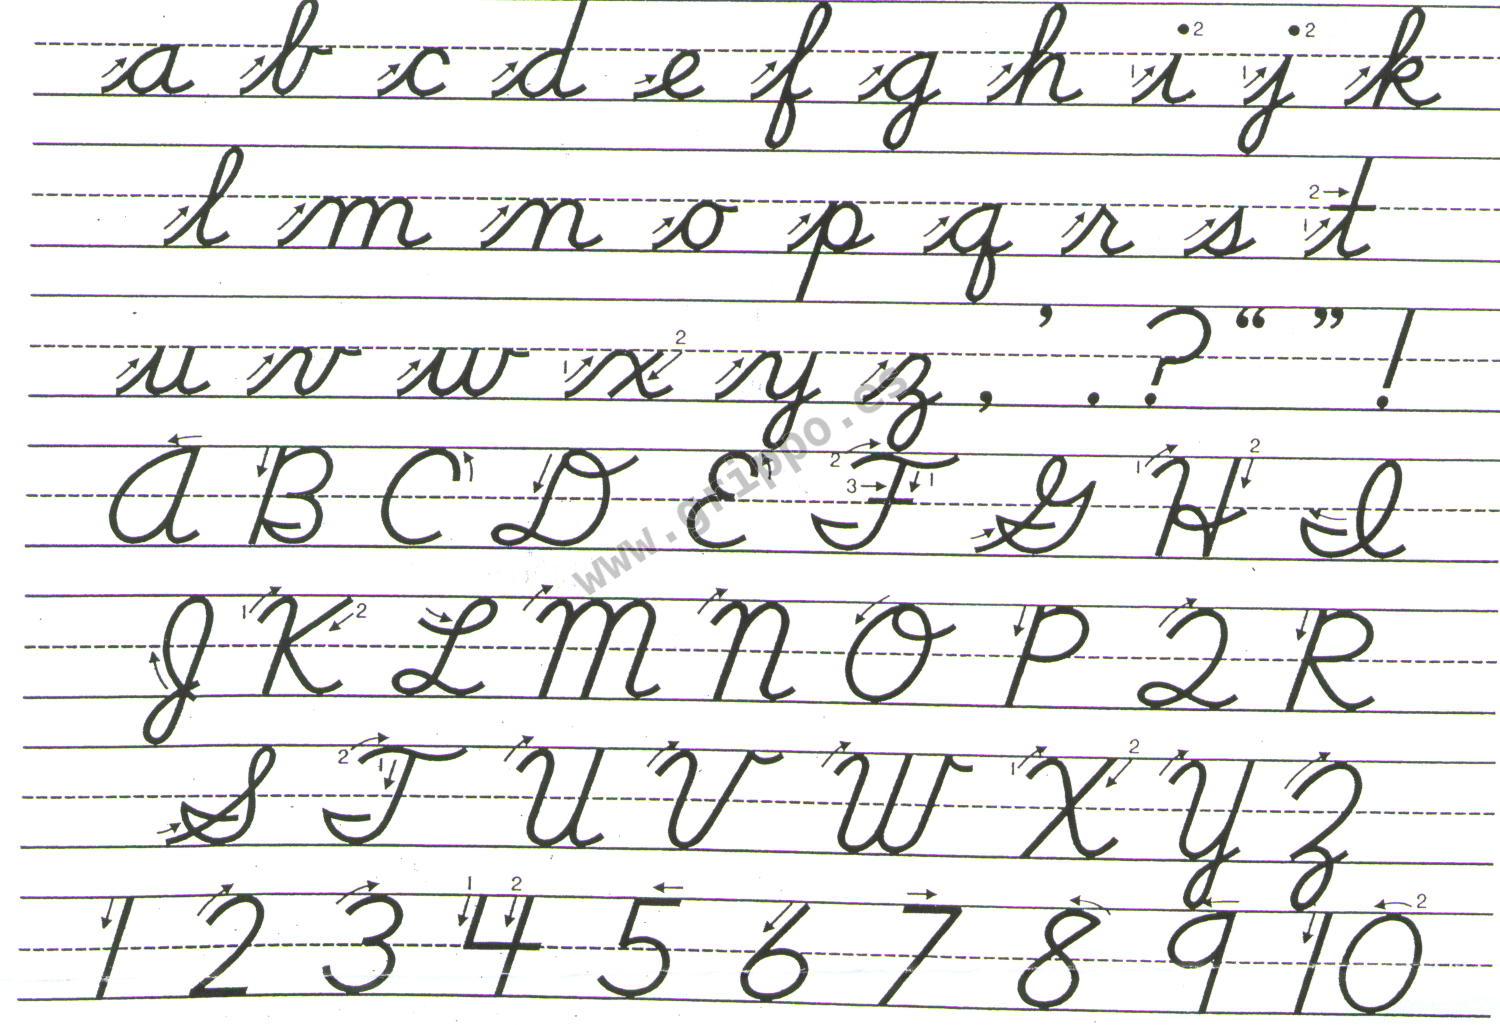 Abecedario en letra cursiva en mayuscula y minuscula - Imagui